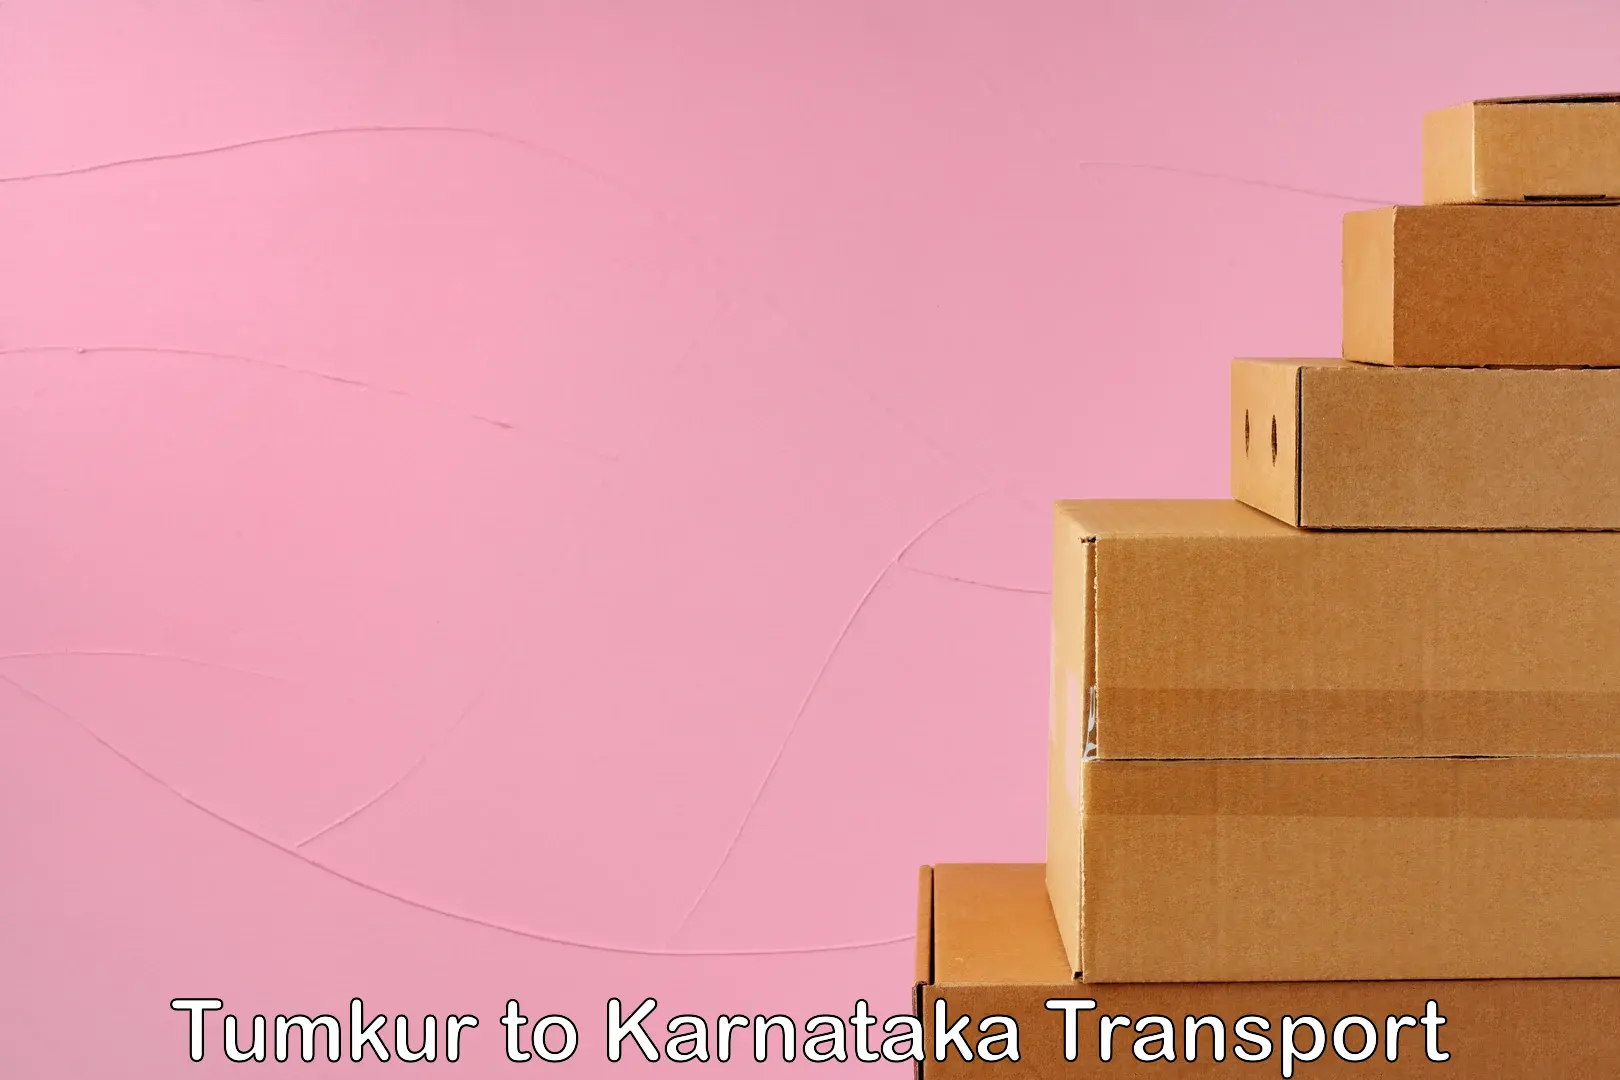 Furniture transport service Tumkur to Karnataka